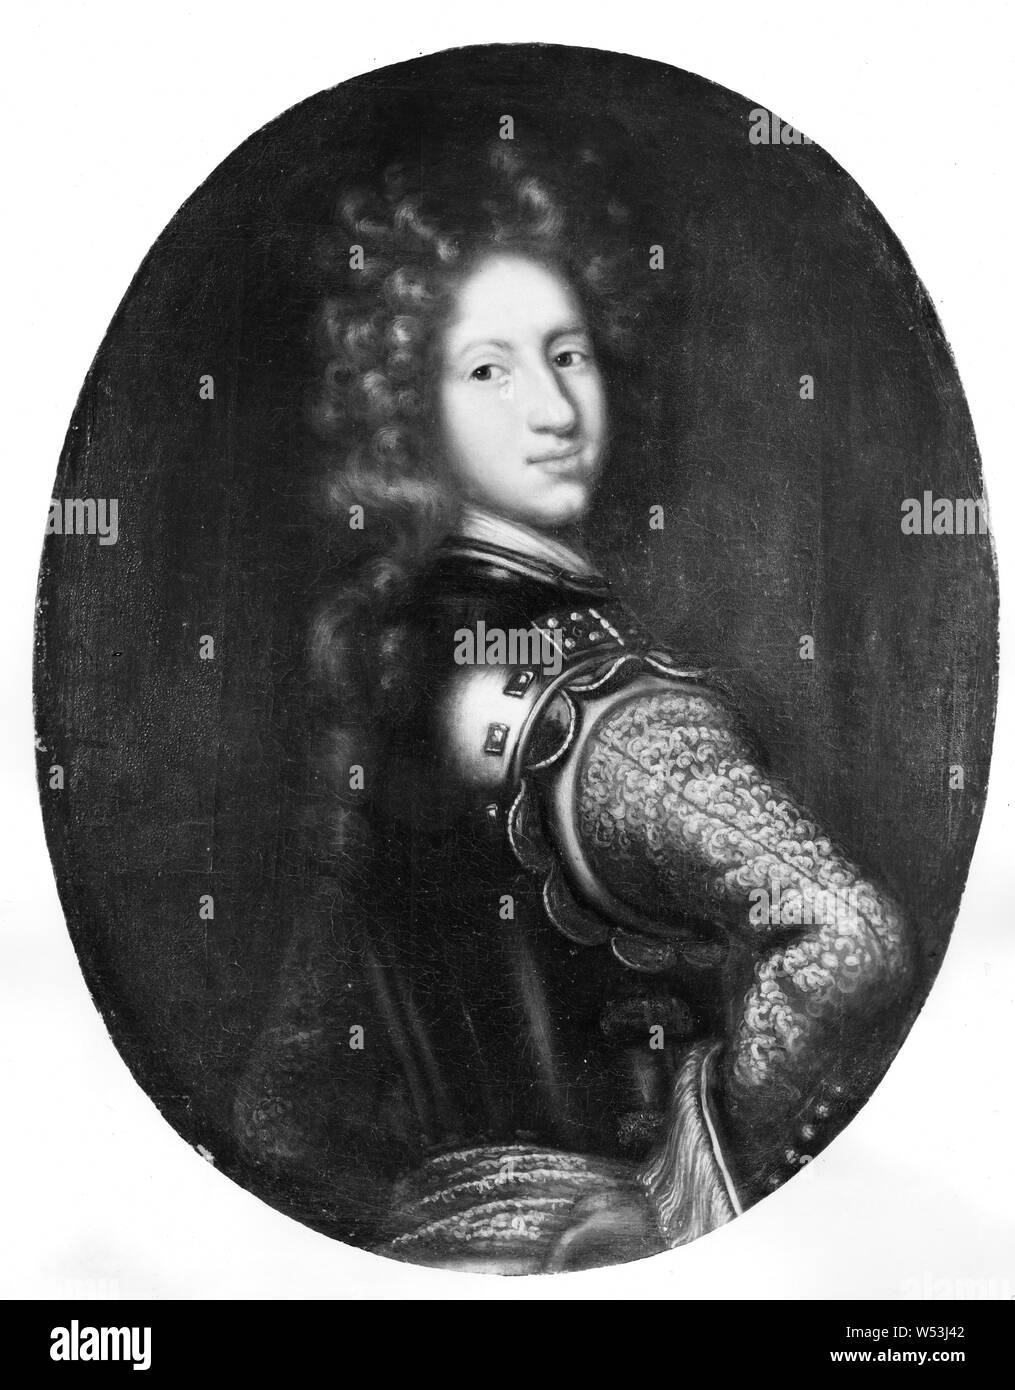 Après David Klöcker Ehrenstrahl, le roi Charles XII, 1682-1718, Charles XII, roi de Suède, peinture, portrait, Charles XII de Suède, 1698, huile sur toile, hauteur, 82 cm (32,2 po), largeur, 63 cm (24,8 pouces) Banque D'Images